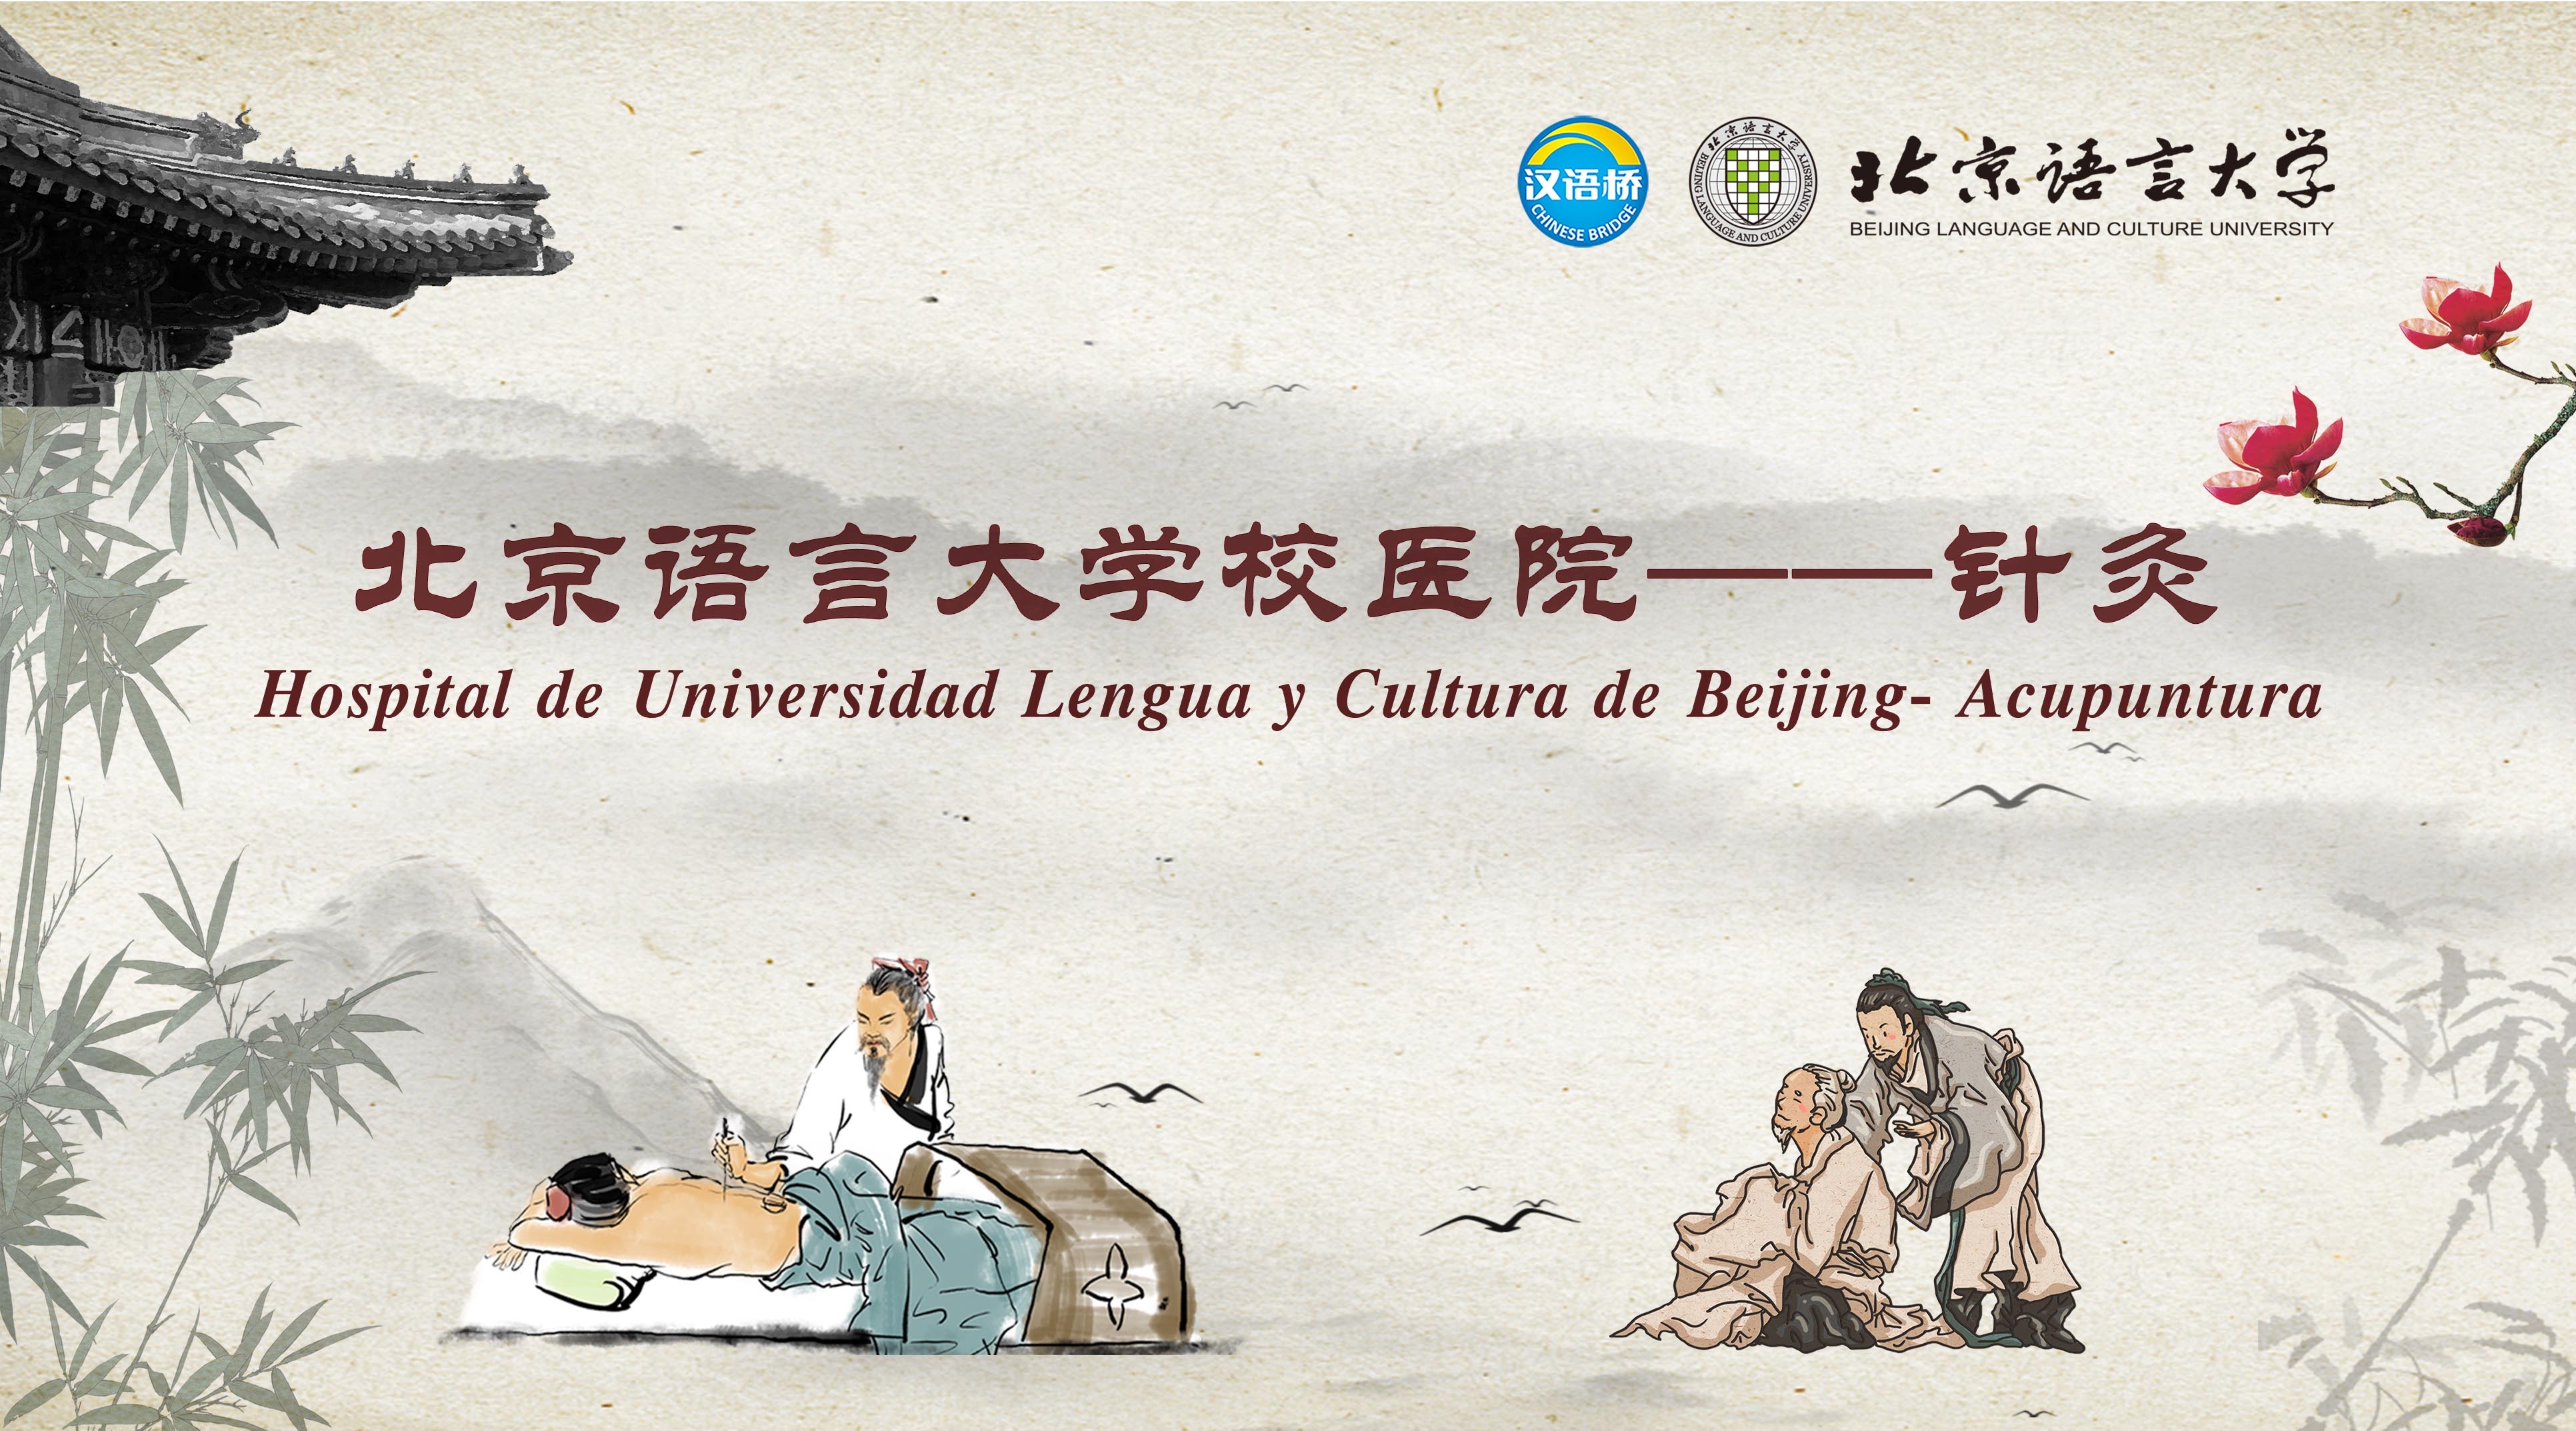 Hospital de Universidad Lengua y Cultura de Beijing- Acupuntura